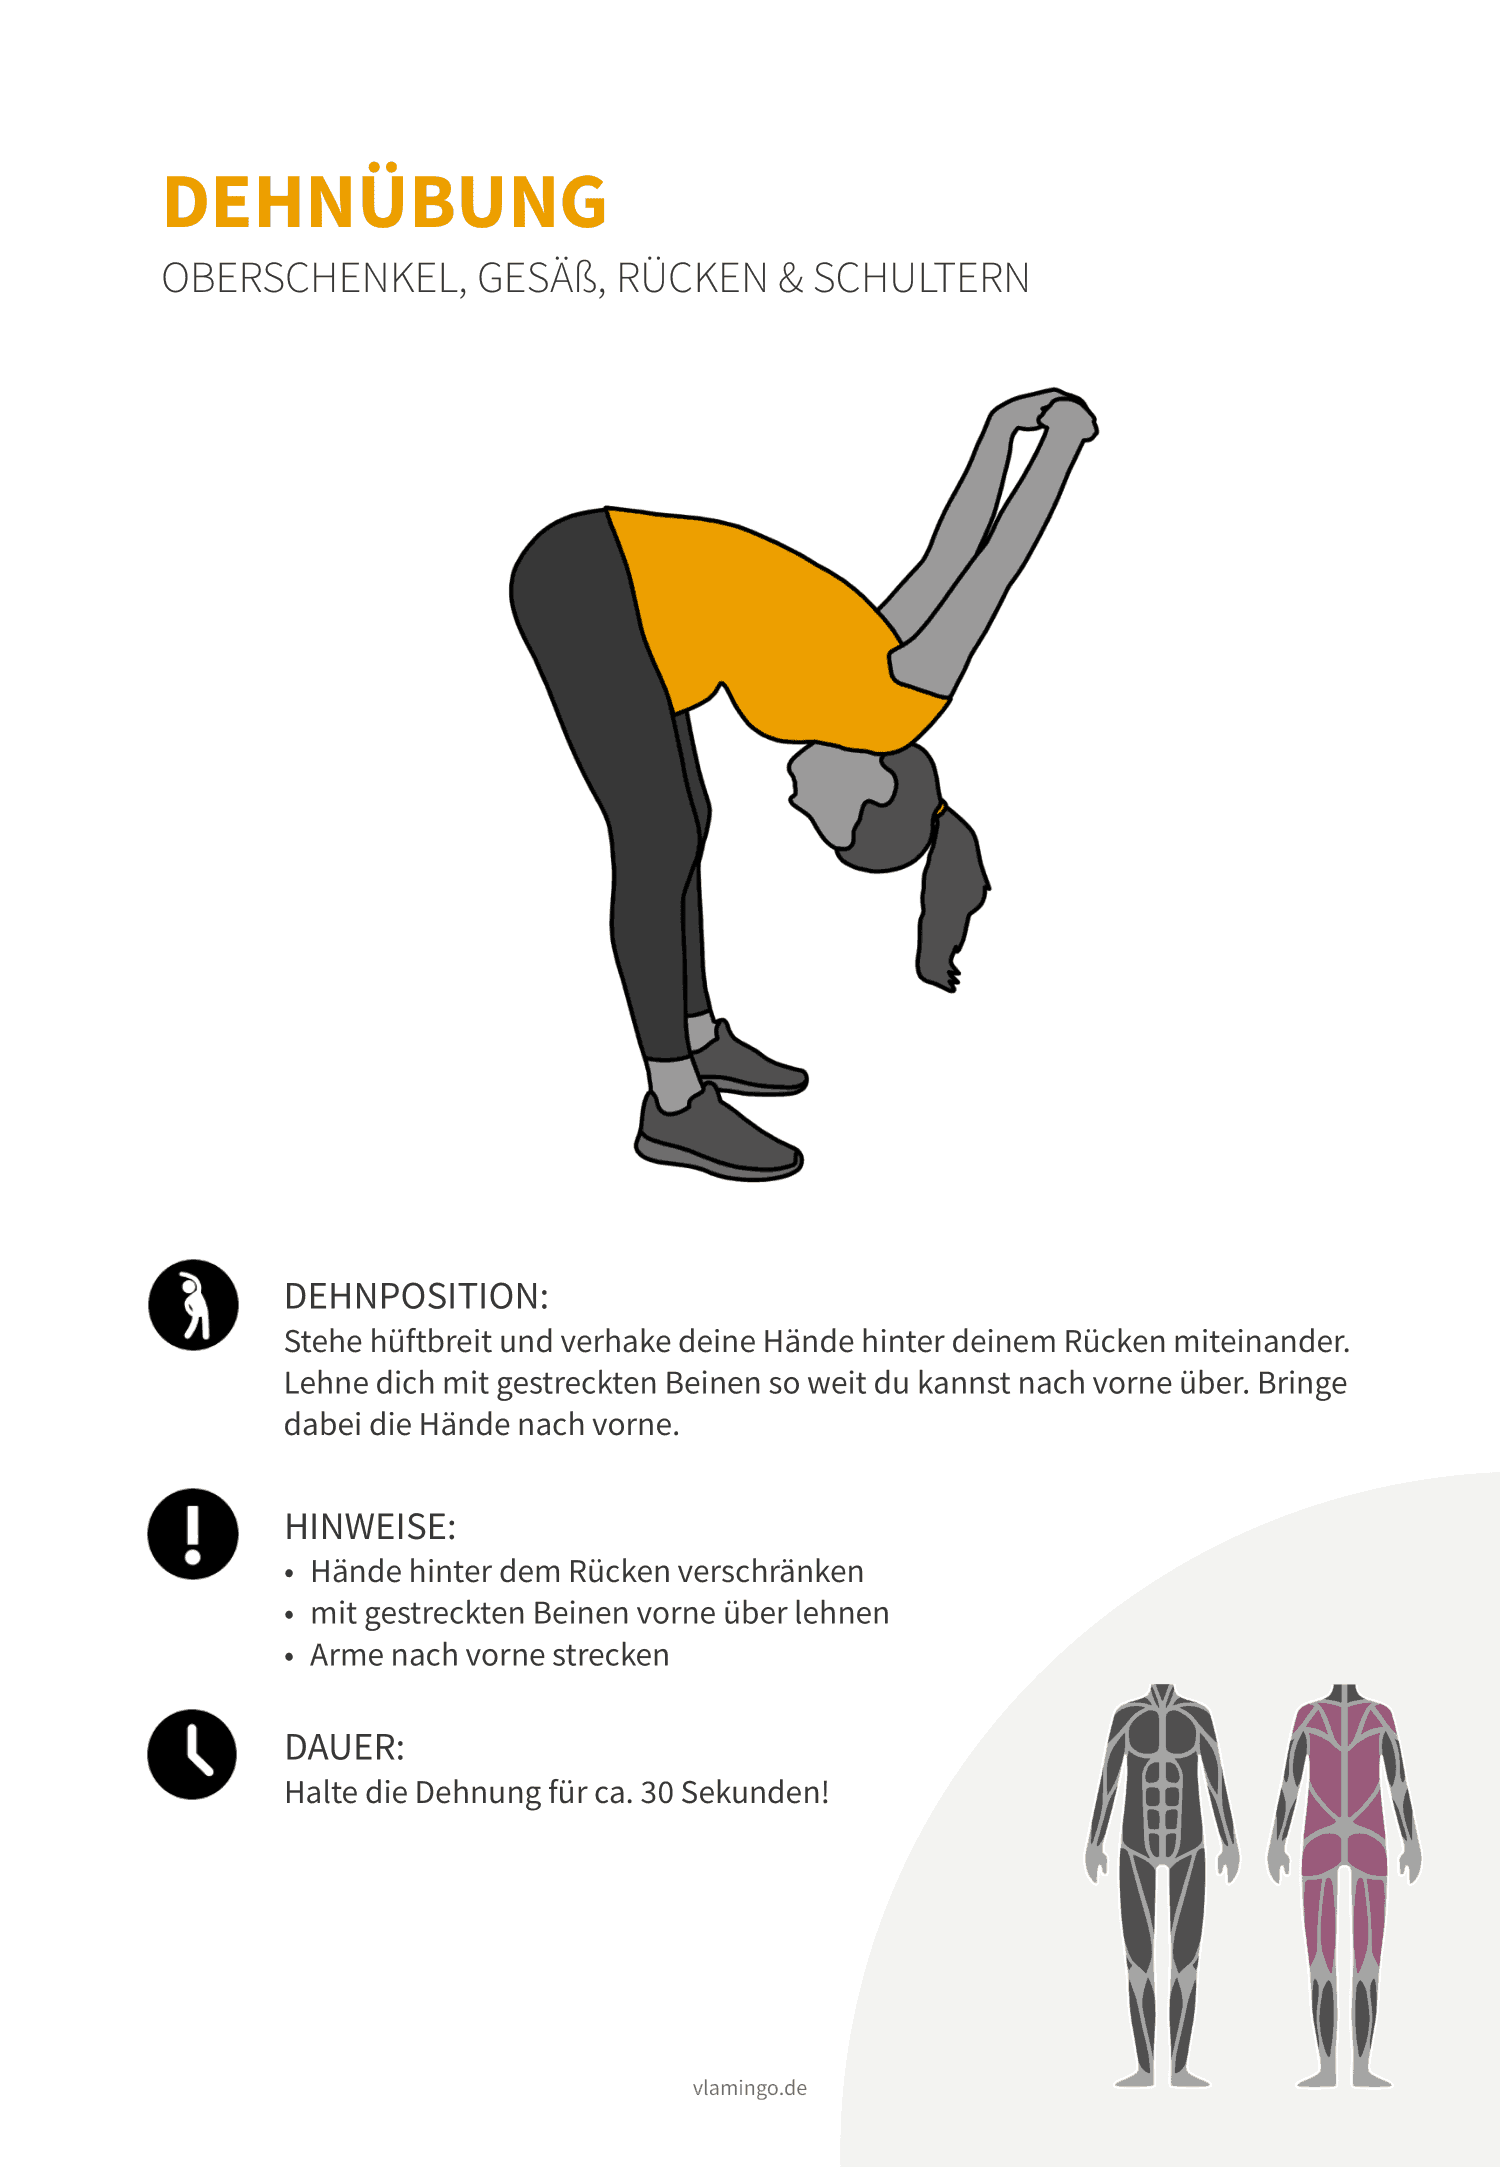 Dehnübung 025 - Oberschenkel, Gesäß, Rücken & Schultern